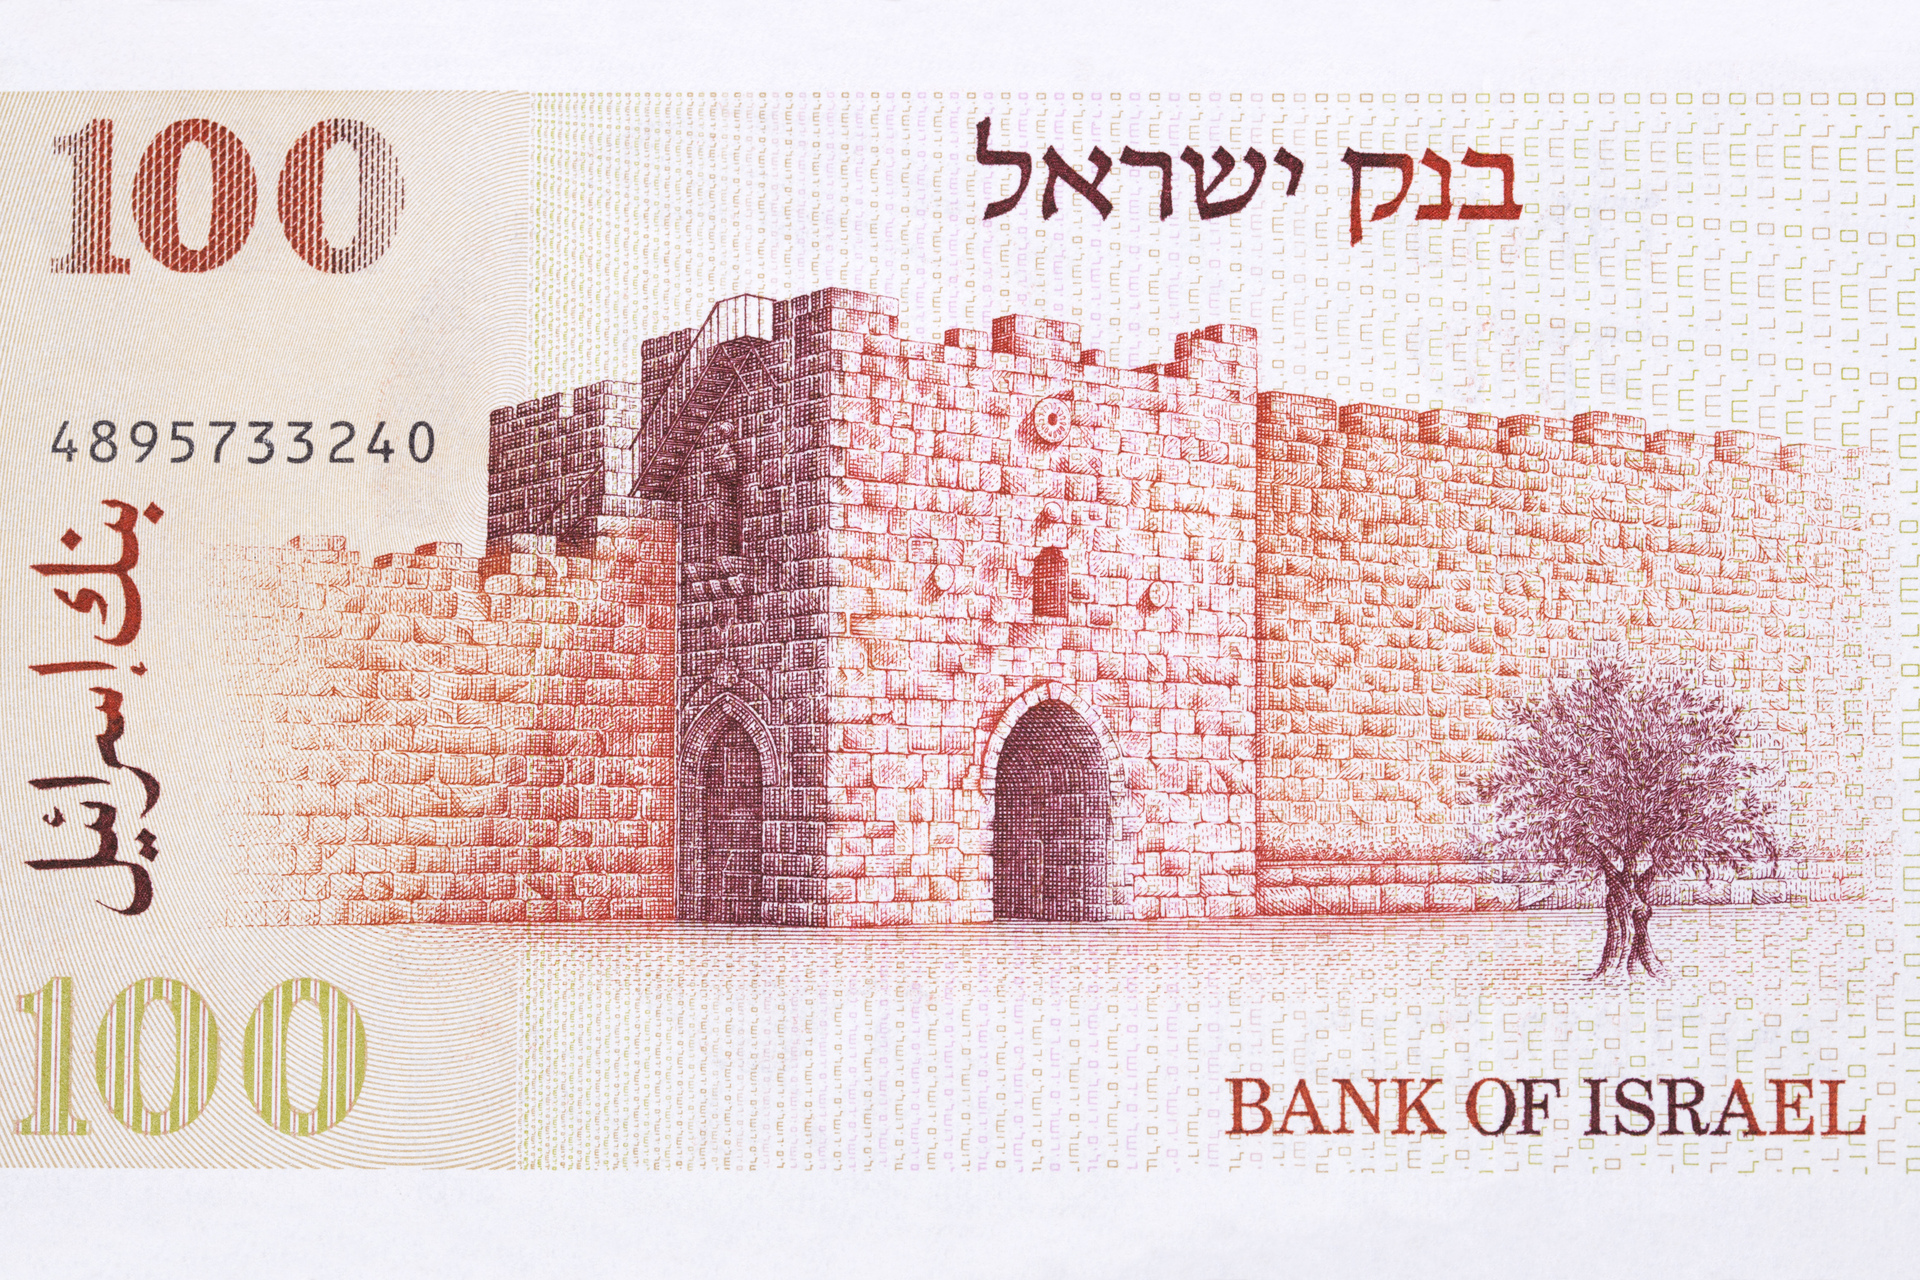 Izraelski banknot, który jest pełen unikalnych elementów i znajduje się na białym tle